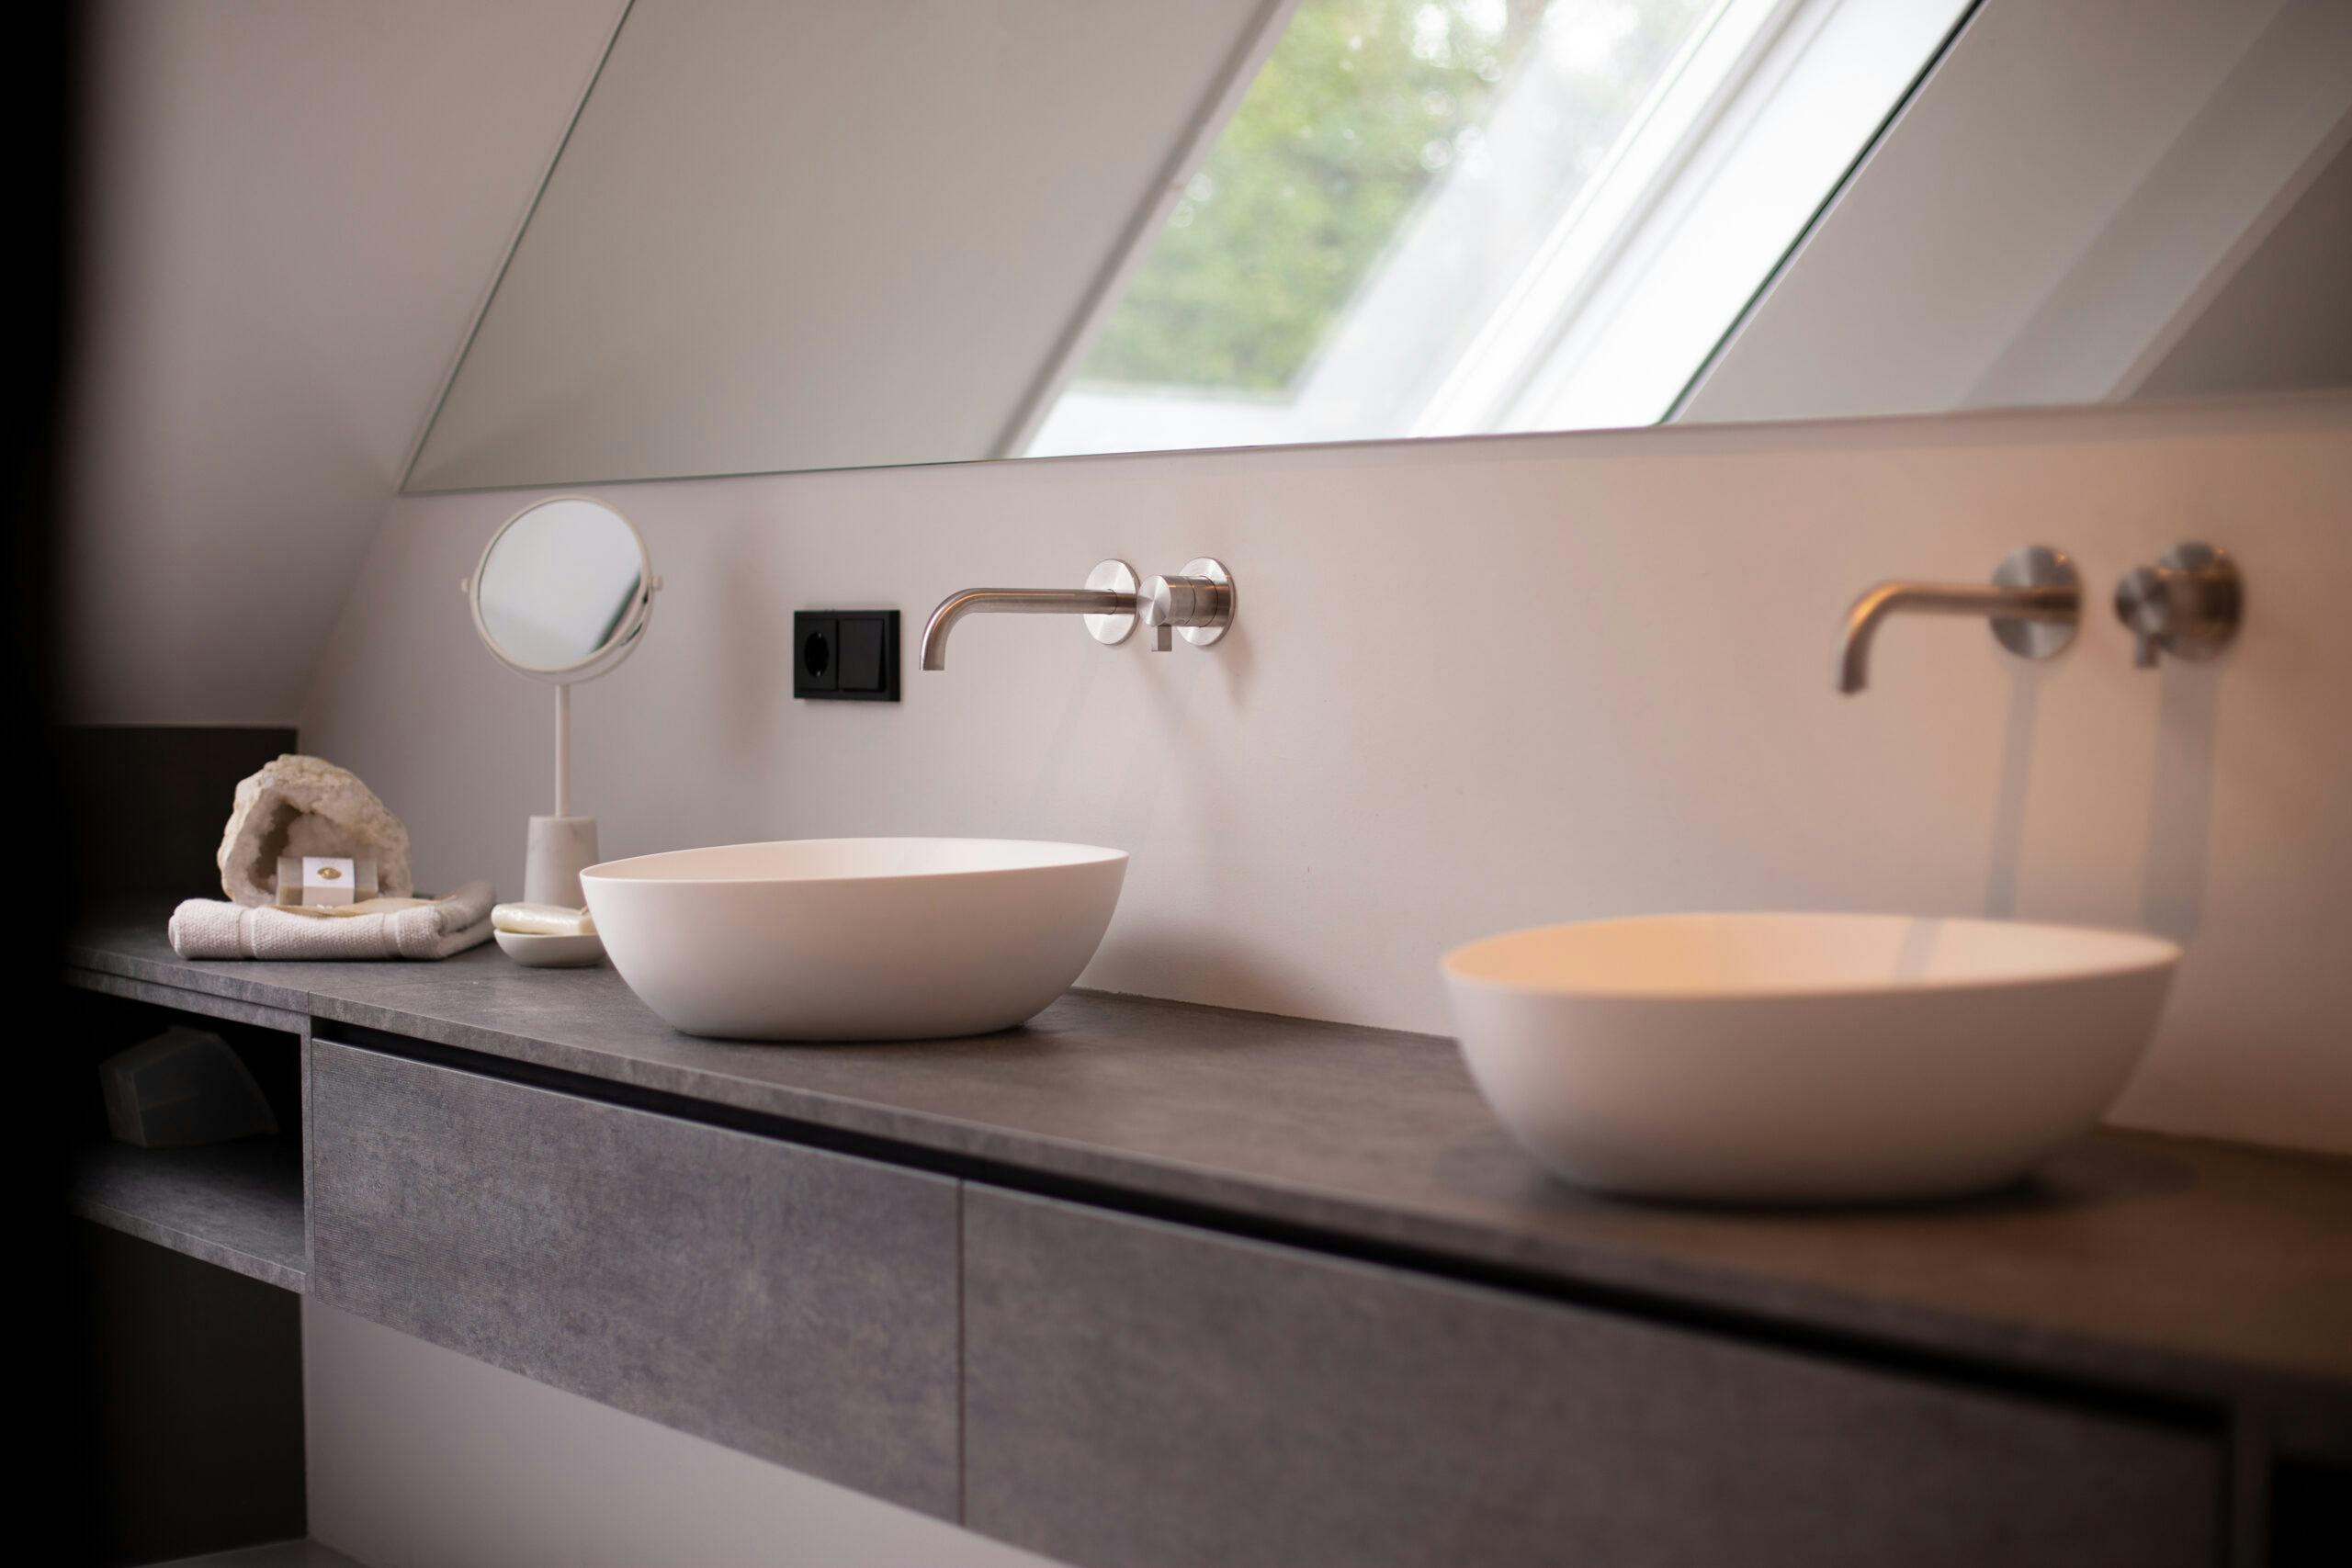 Het scandinavische badkamer design kenmerkt zich door het hoekige patroon van de muur achter de spiegel.